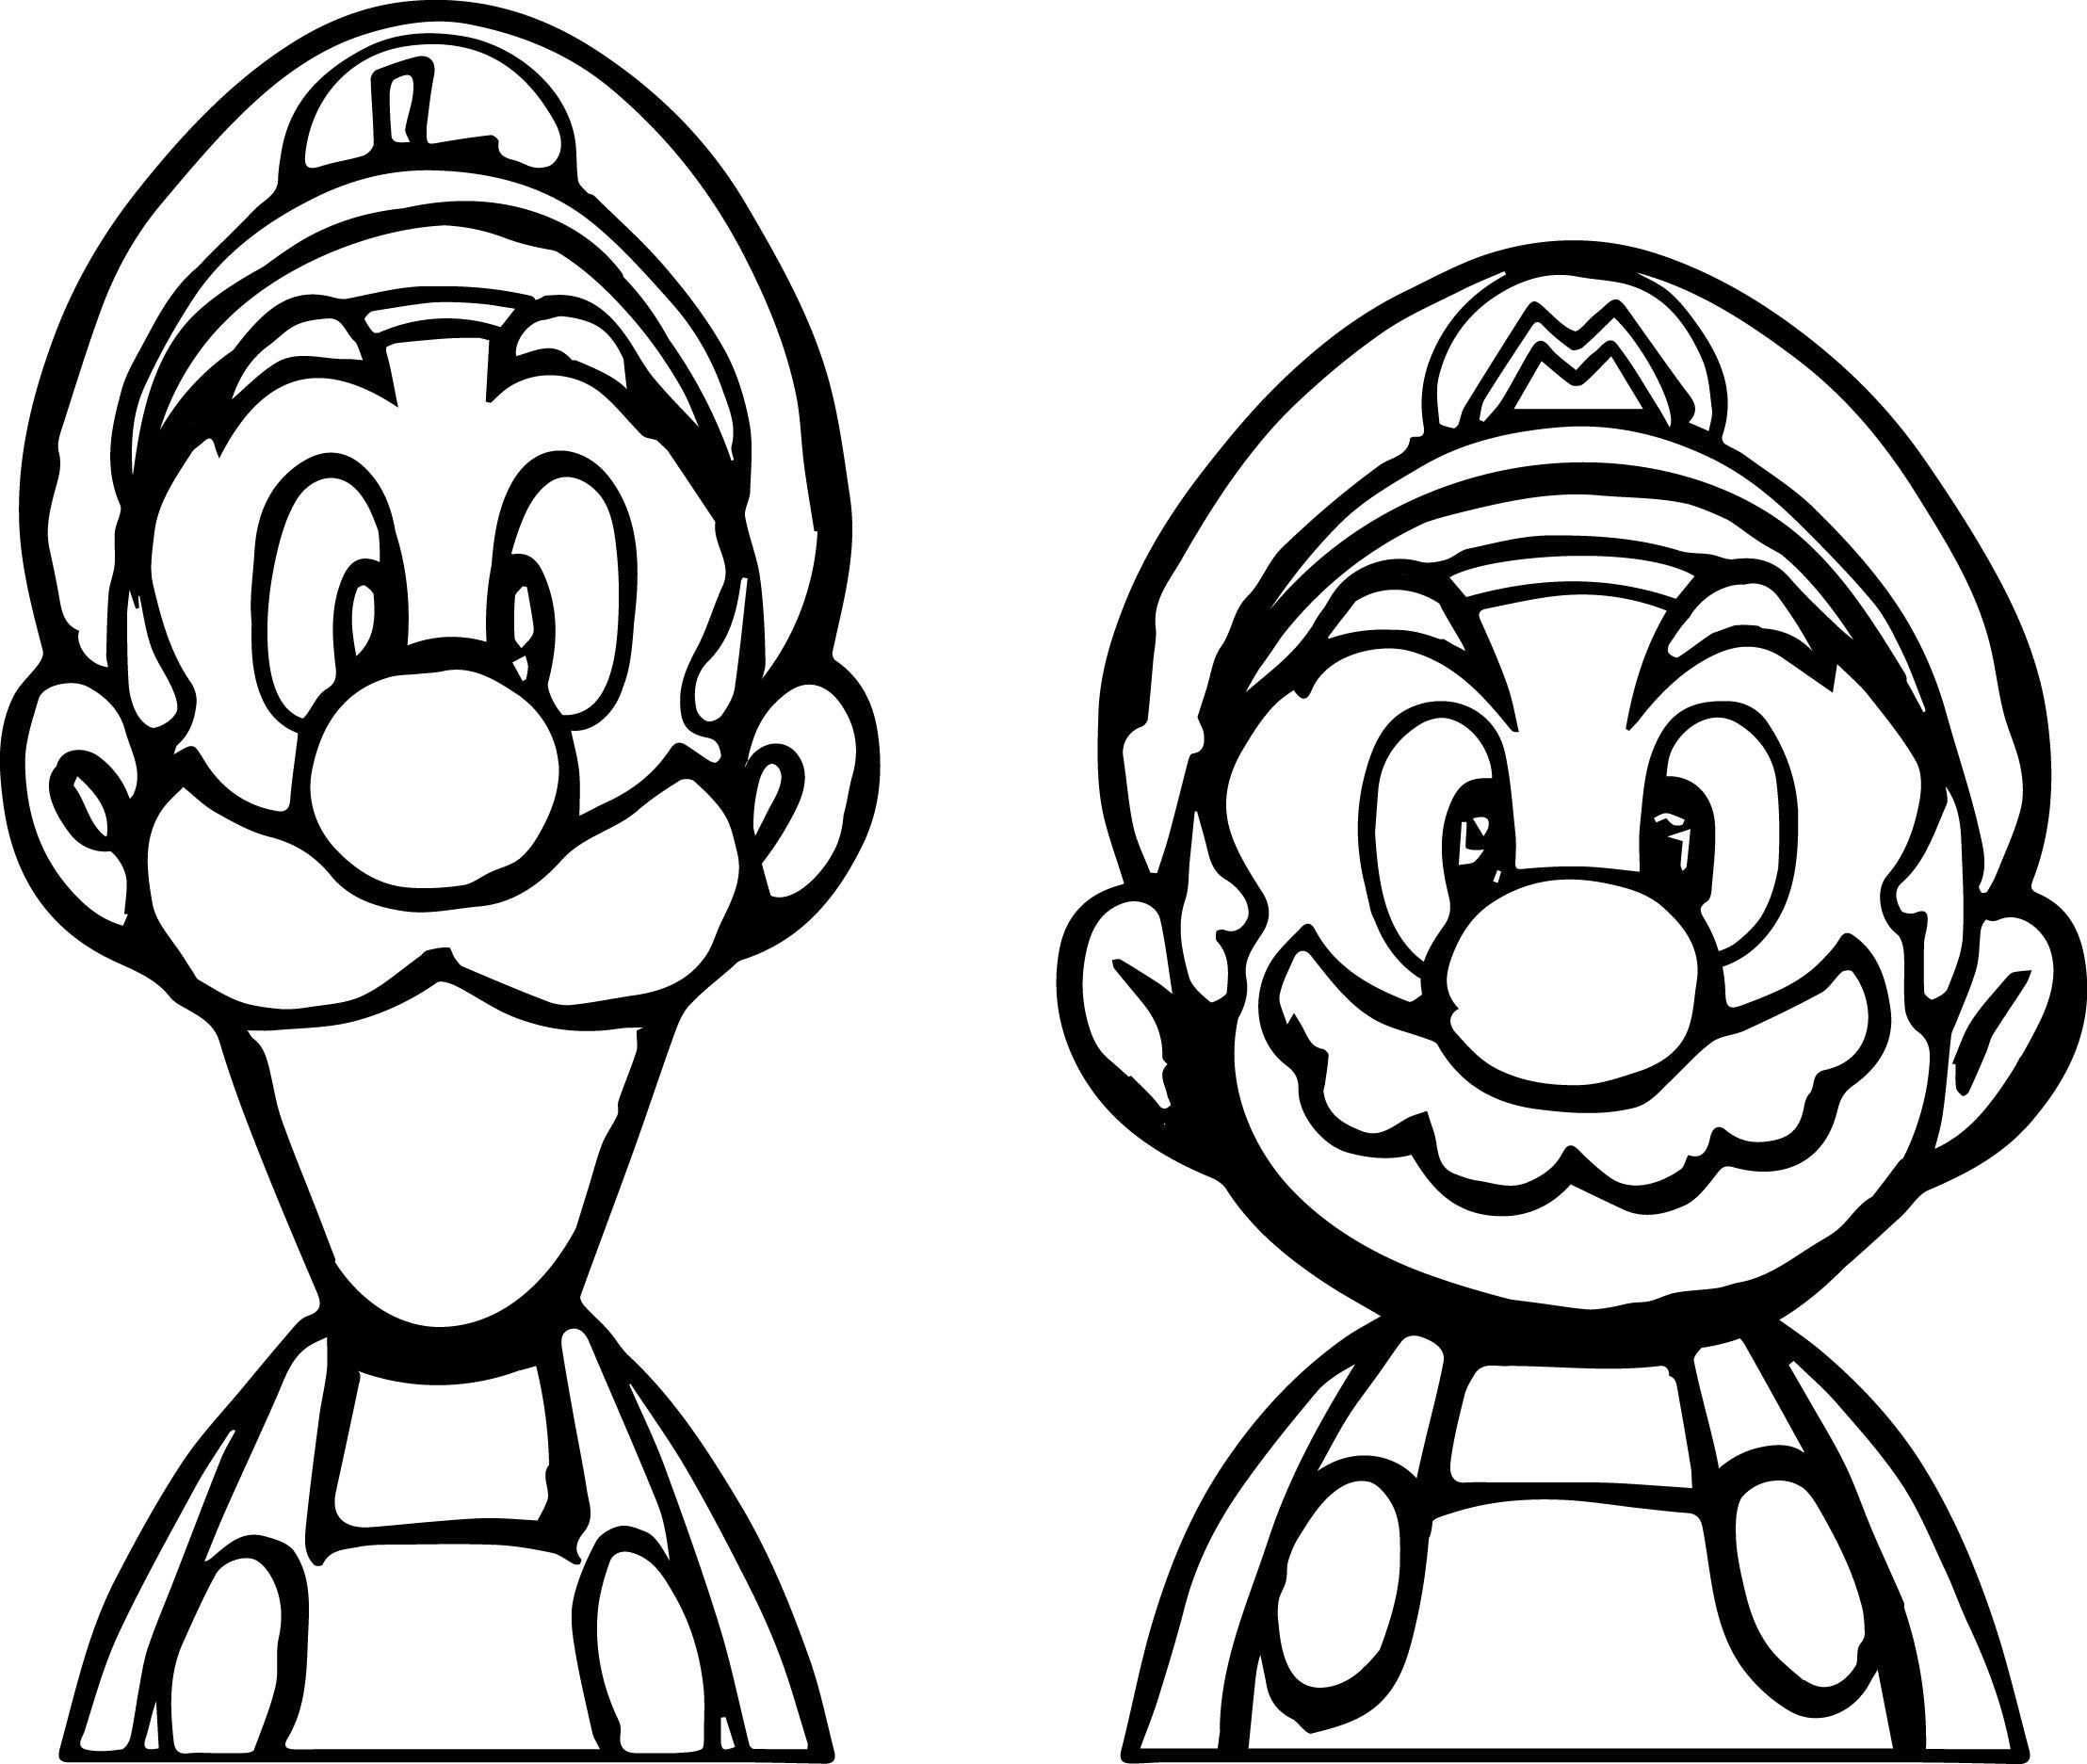 Afbeeldingsresultaat Voor Mario And Luigi Face Coloring Pages Printable Kleurplaten Kleurboek Kleurplaten Voor Kinderen